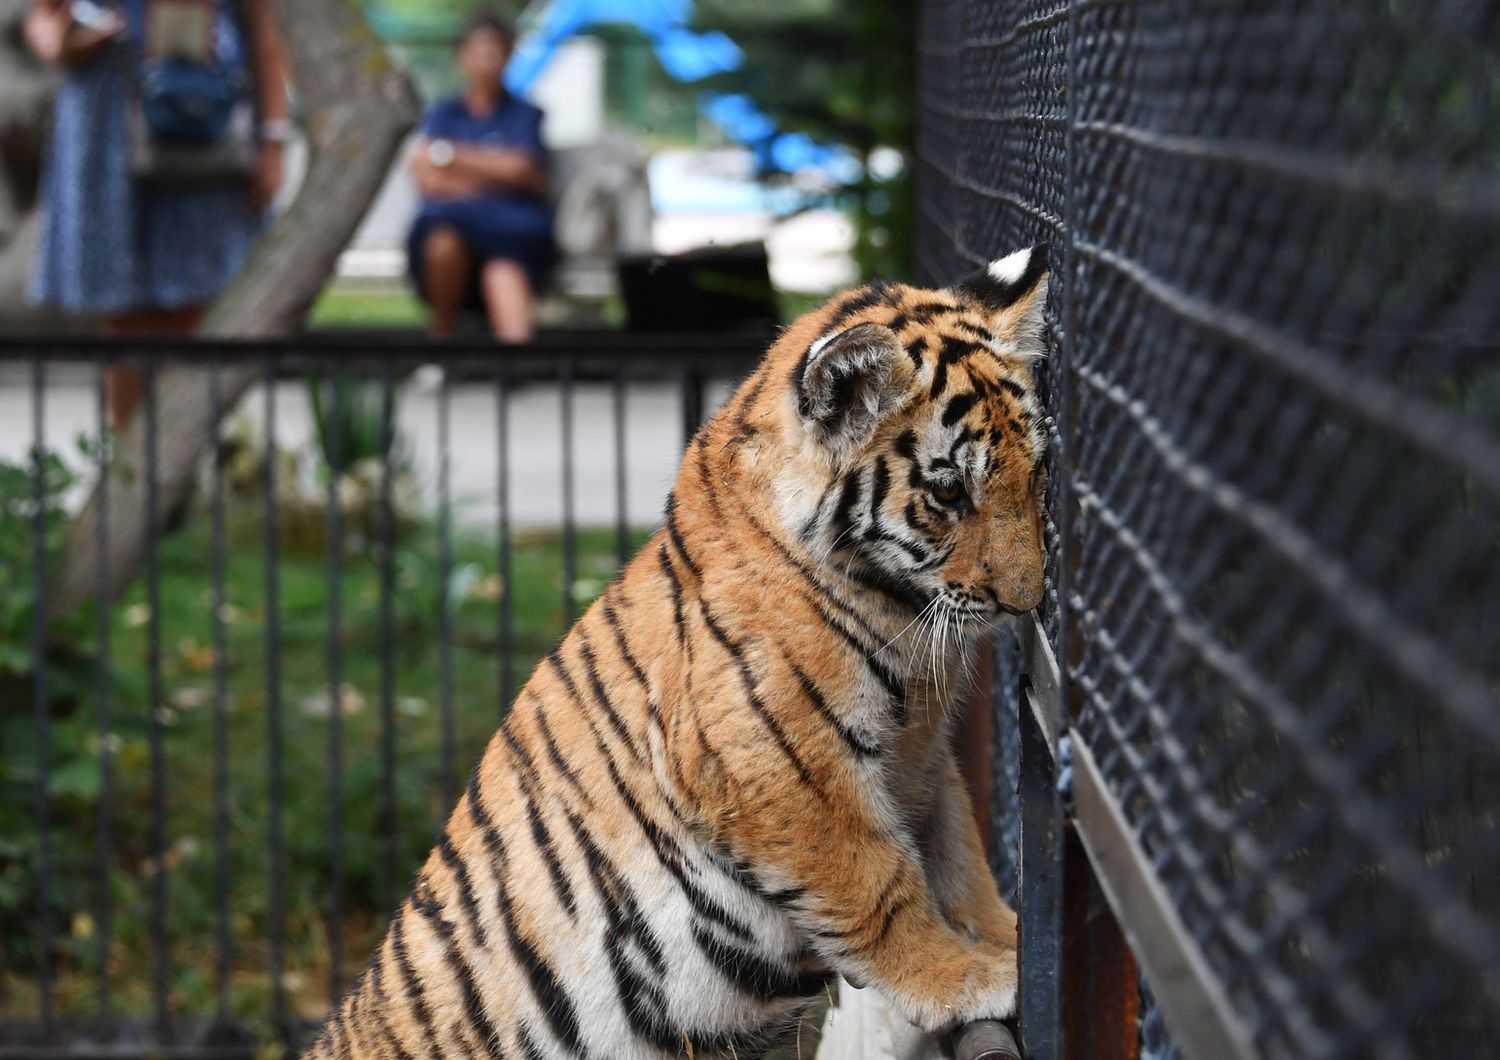 Tigre in una gabbia, immagine d'archivio